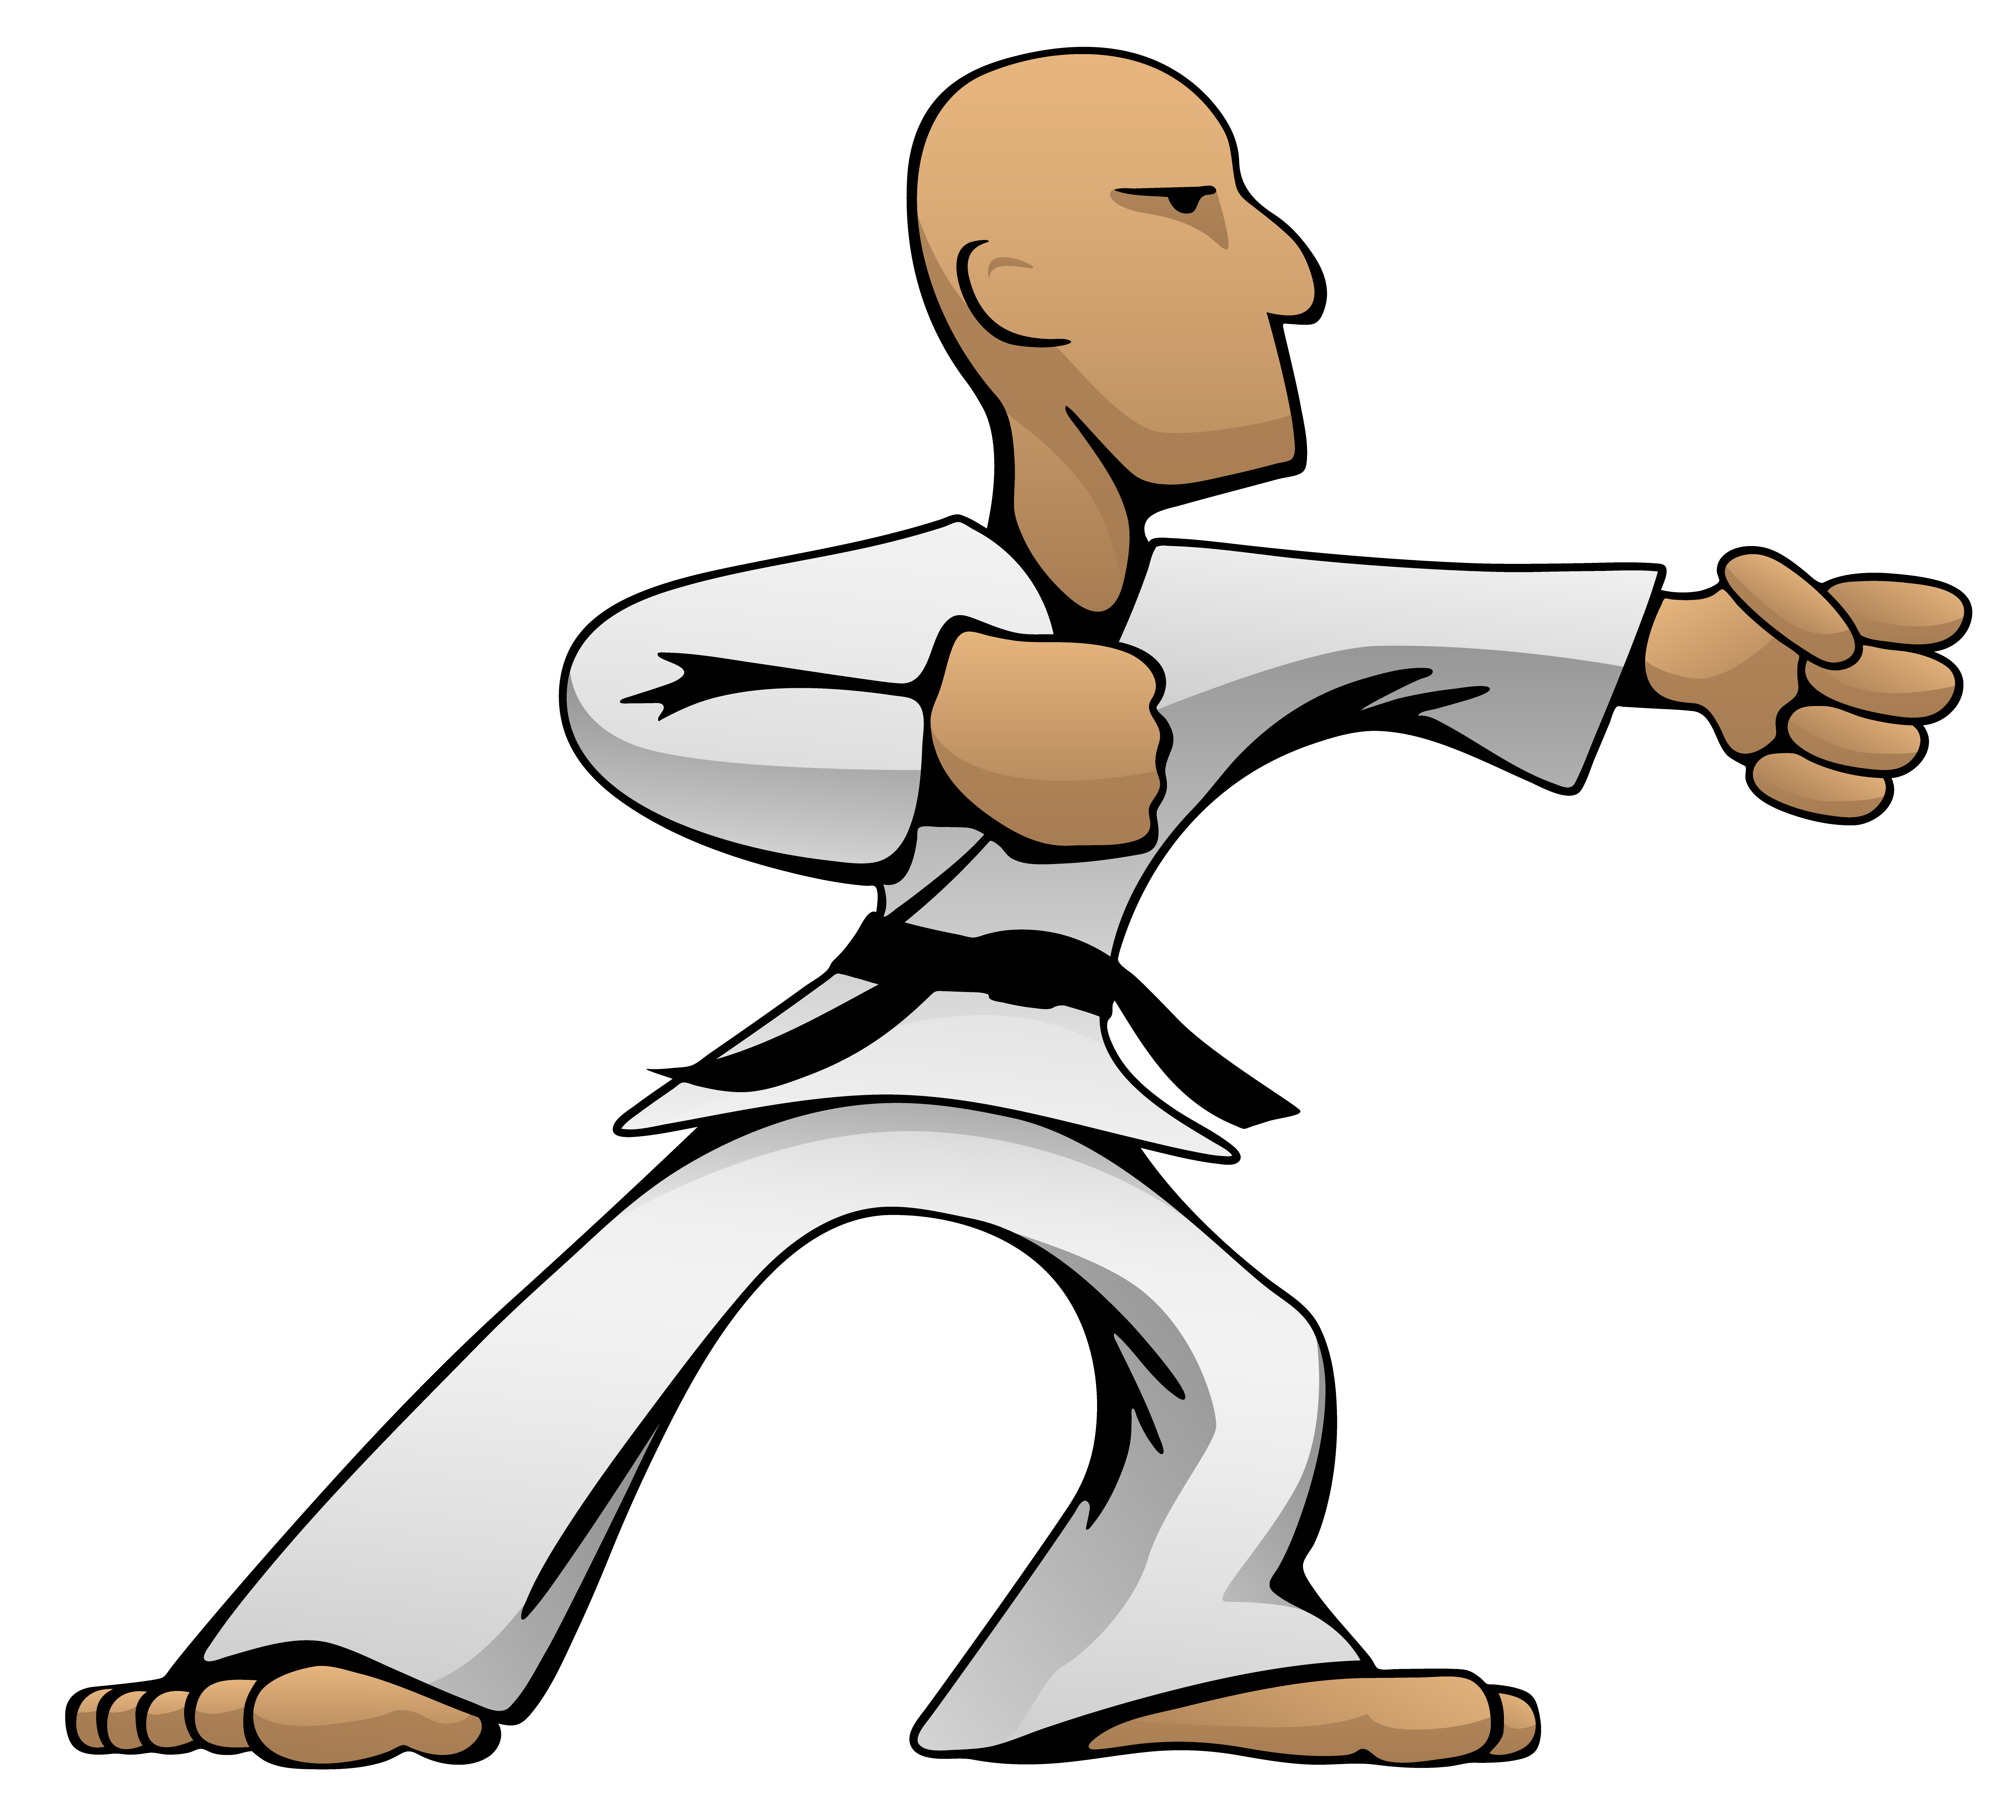 Martial Arts Karate Guy Cartoon Vector Illustration 345291 Vector Art